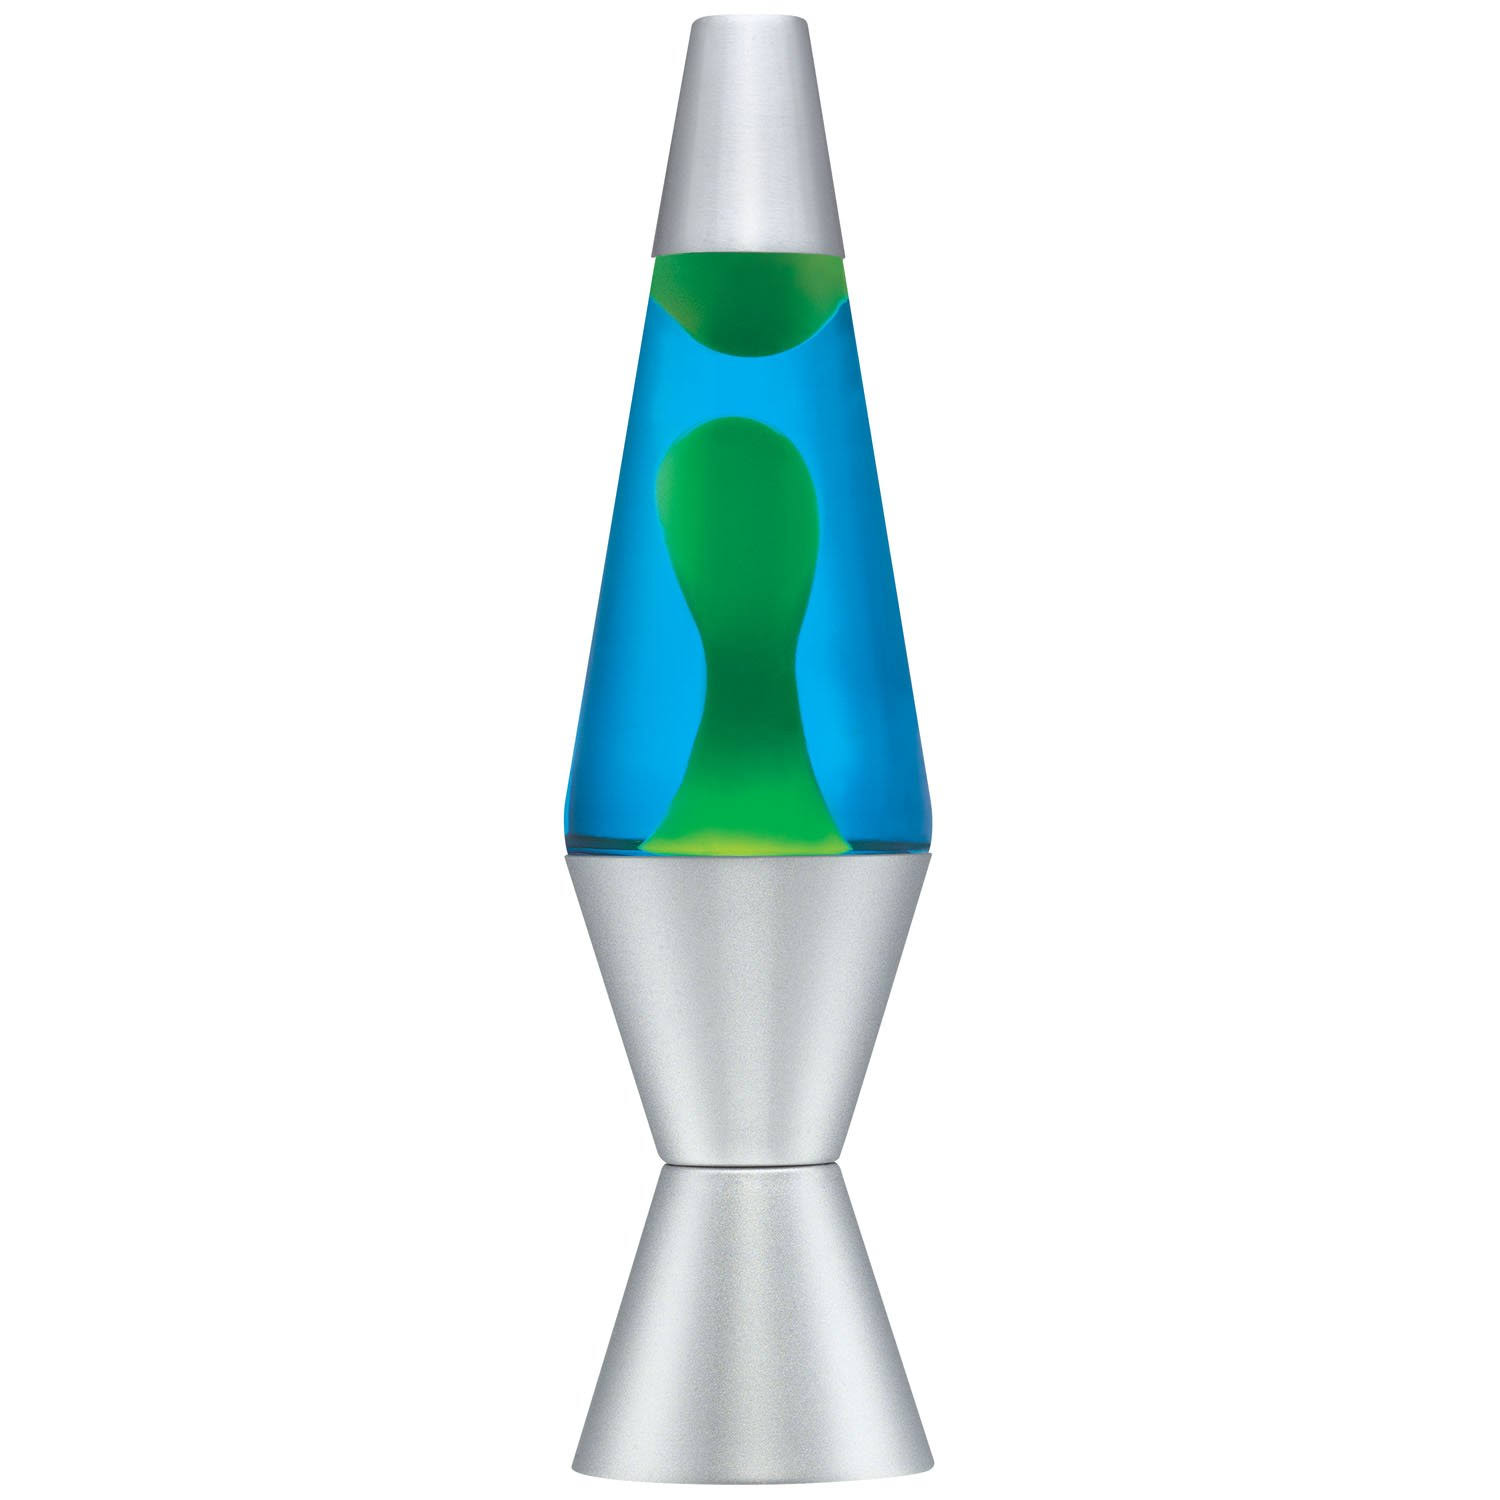 Lava Lite Classic Lava Lamp - Blue & Green, 14.5"